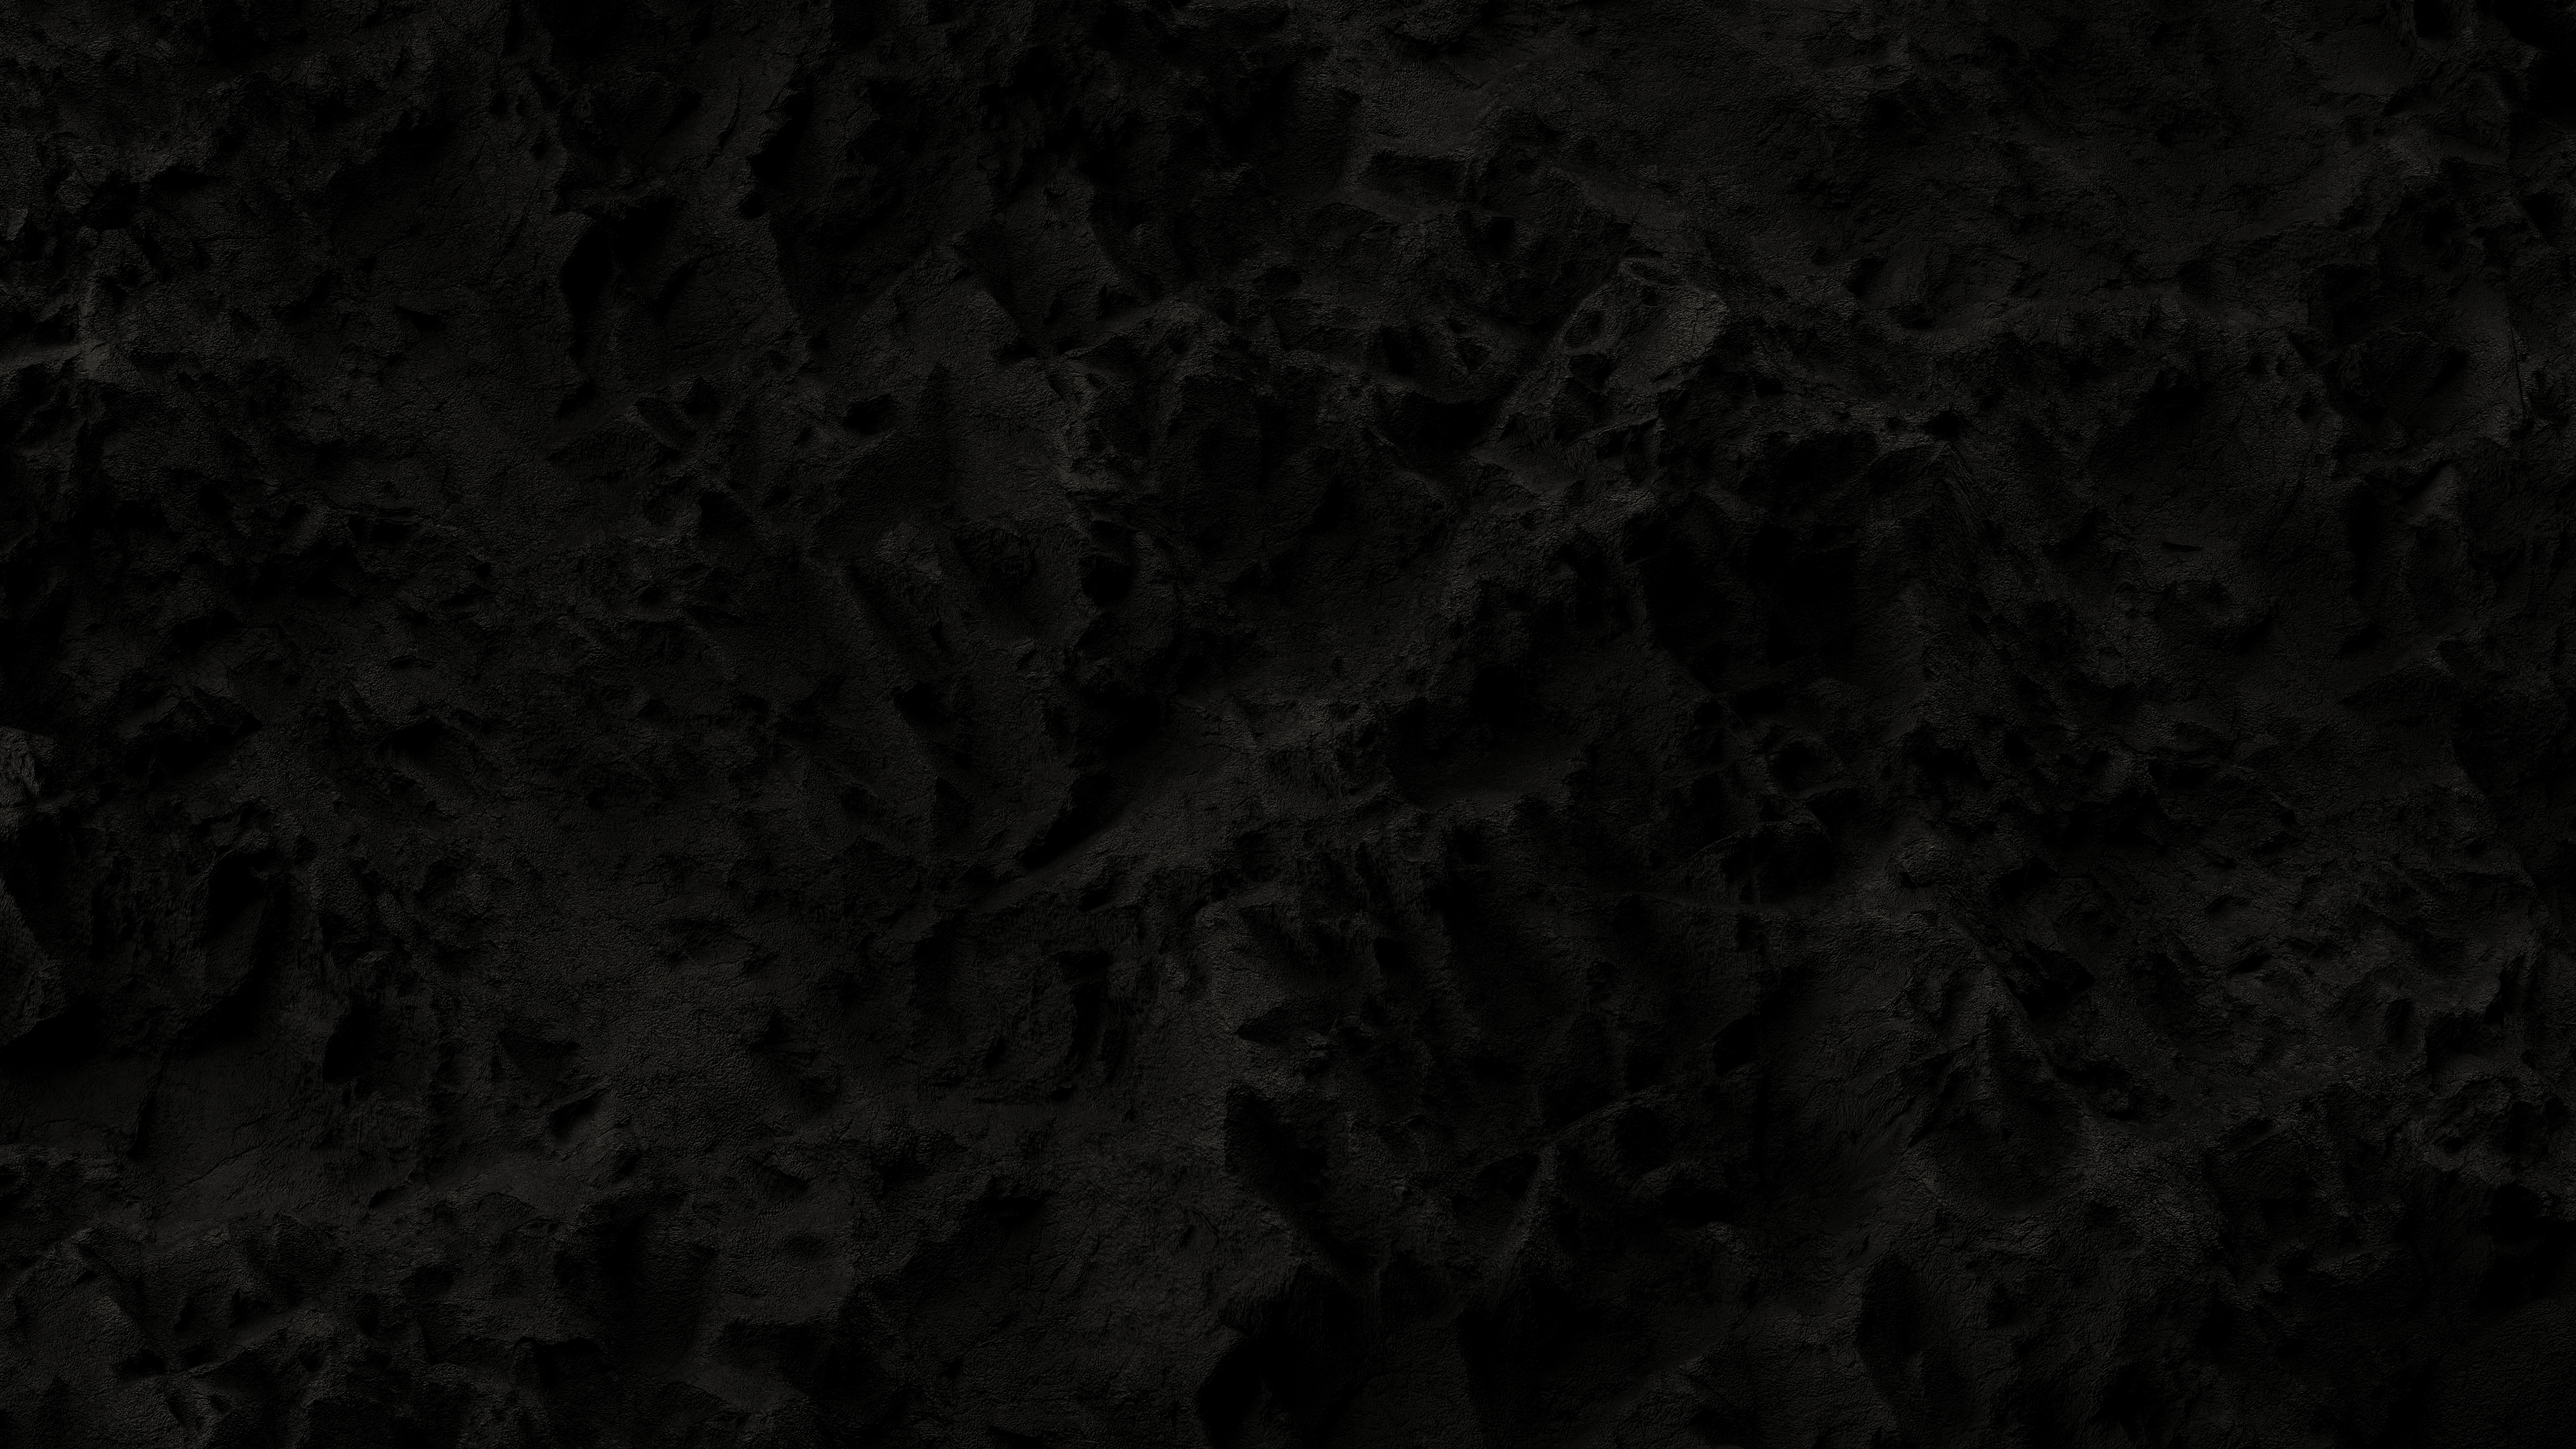 Texture Monochrome Abstract Dark Background 5120x2880